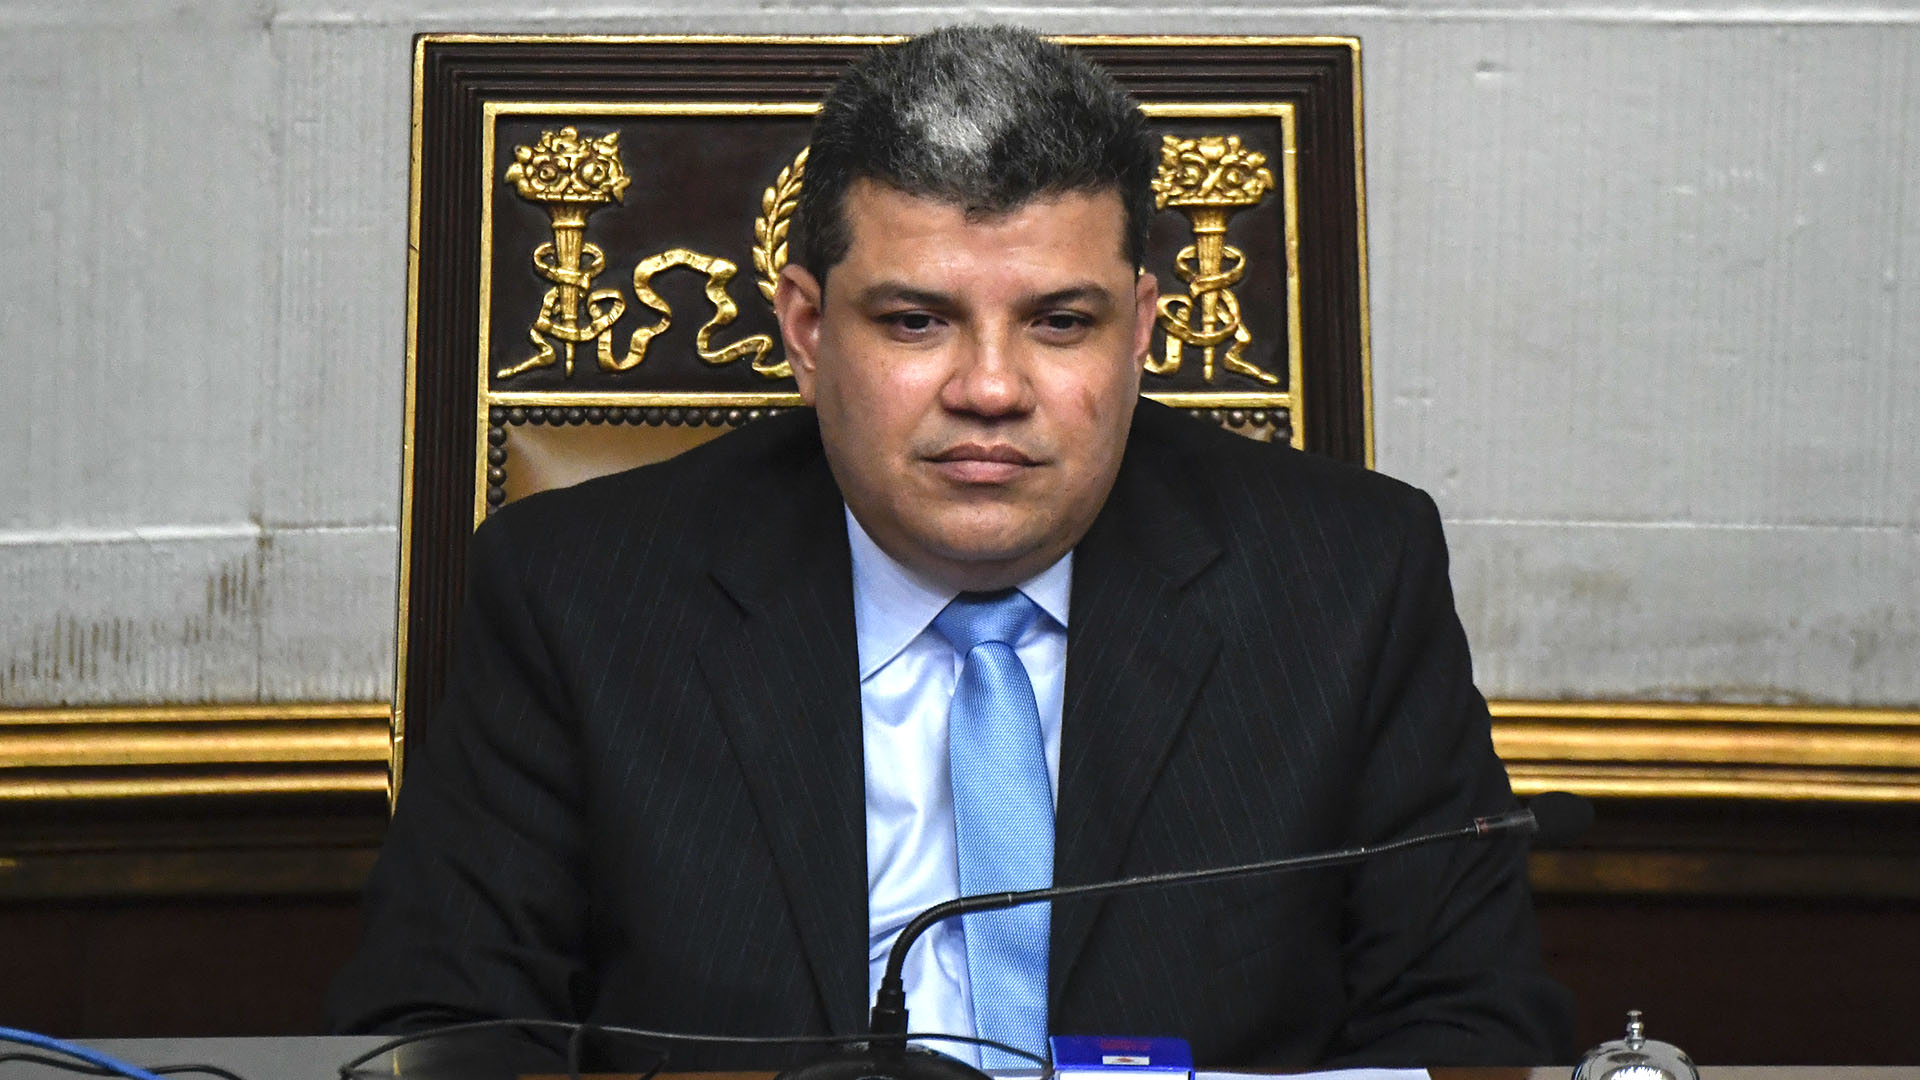 El diputado venezolano Luis Parra fue hospitalizado de urgencia por síntomas similares al coronavirus 